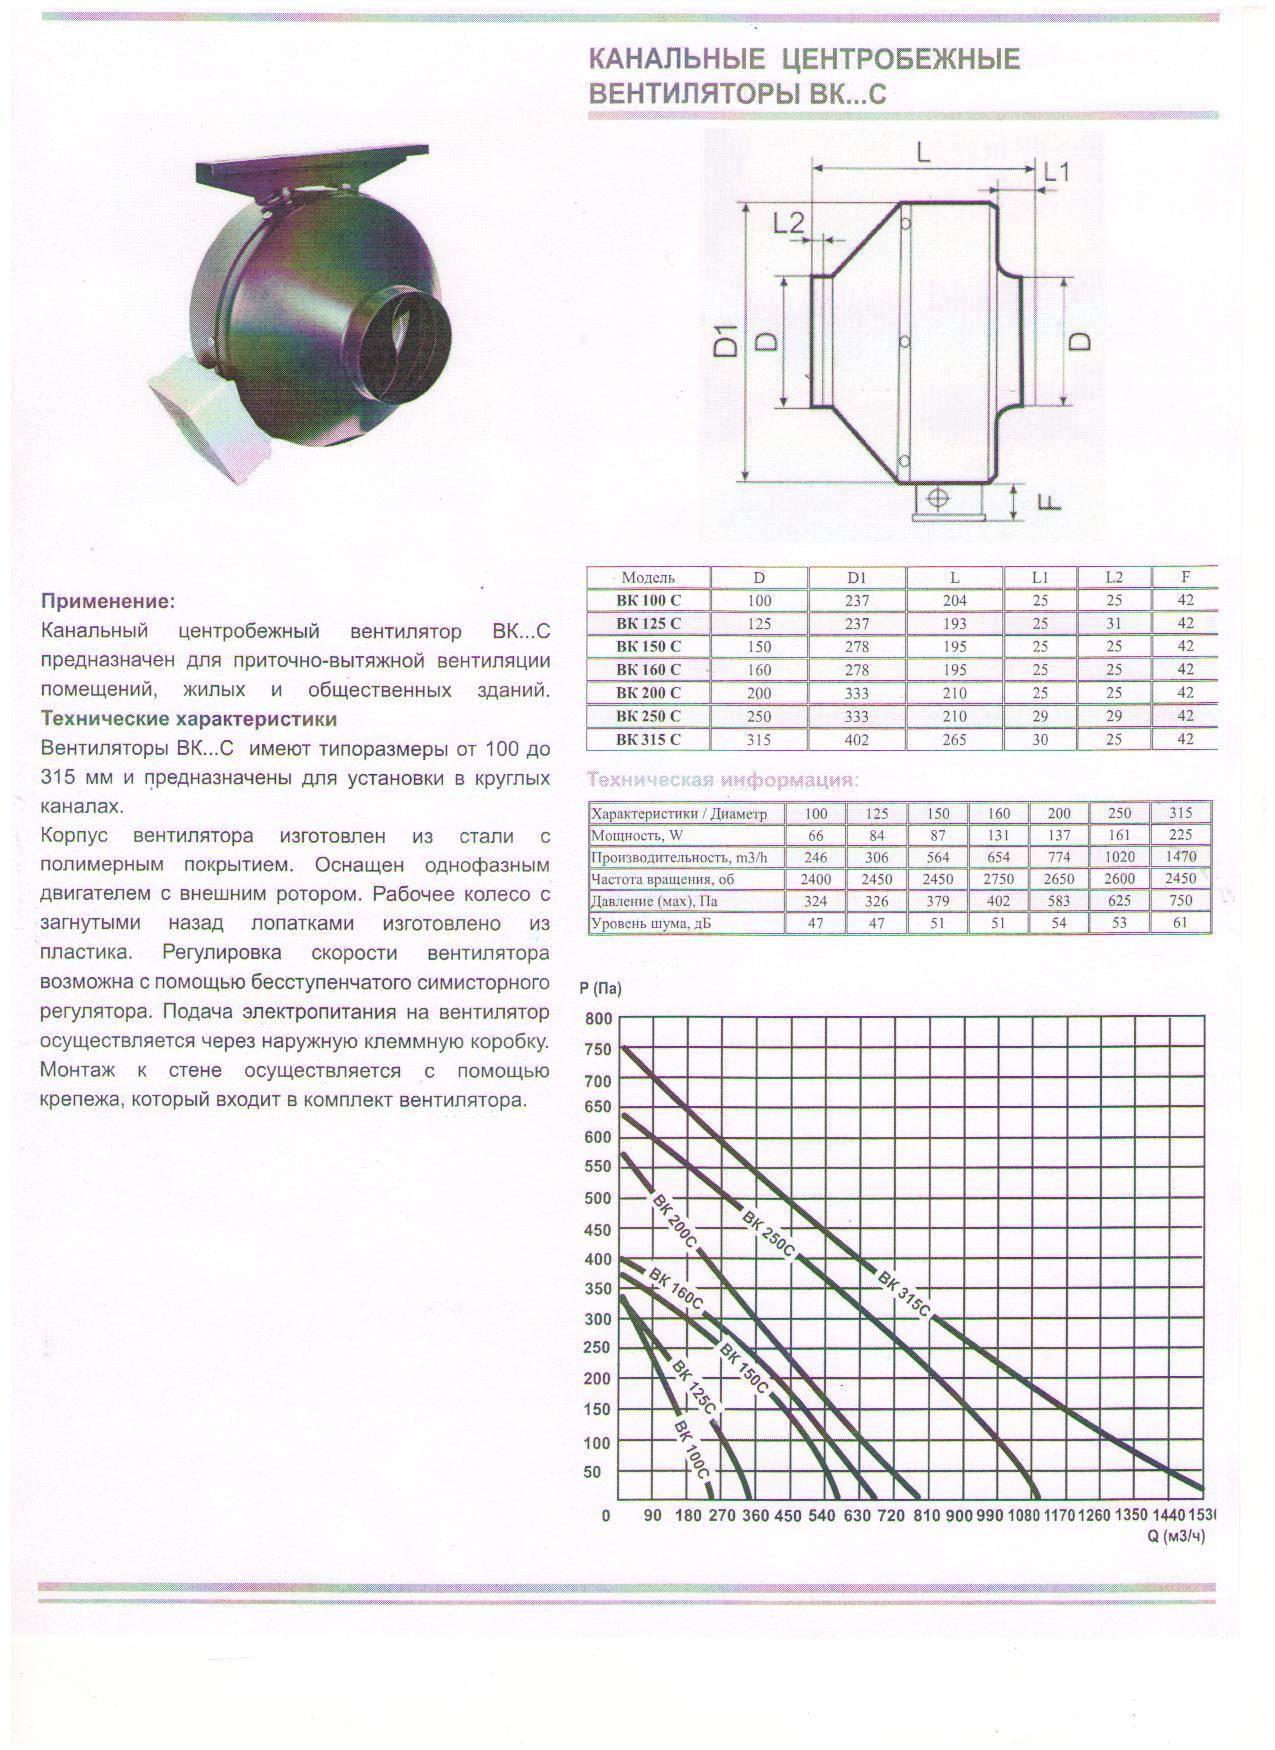 Центробежный (радиальный) вентилятор: принцип действия, назначение, схема